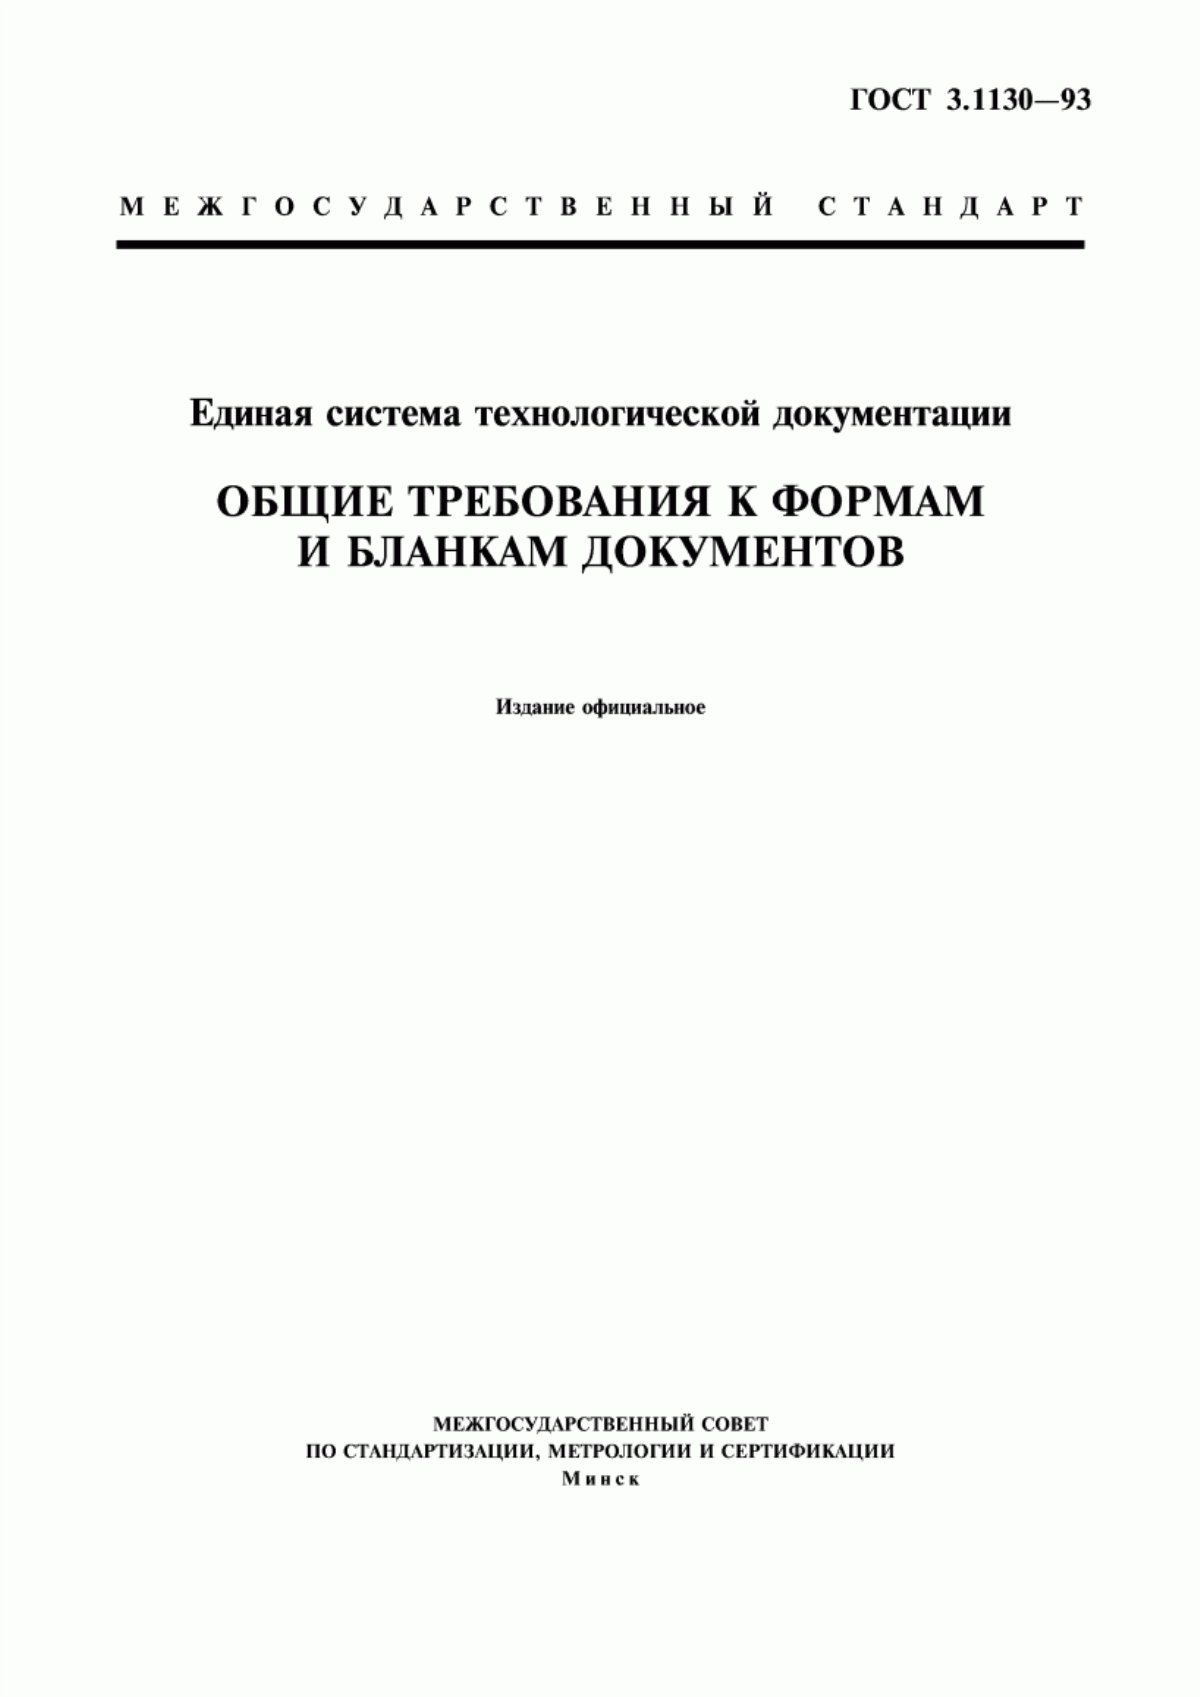 ГОСТ 3.1130-93 Единая система технологической документации. Общие требования к формам и бланкам документов